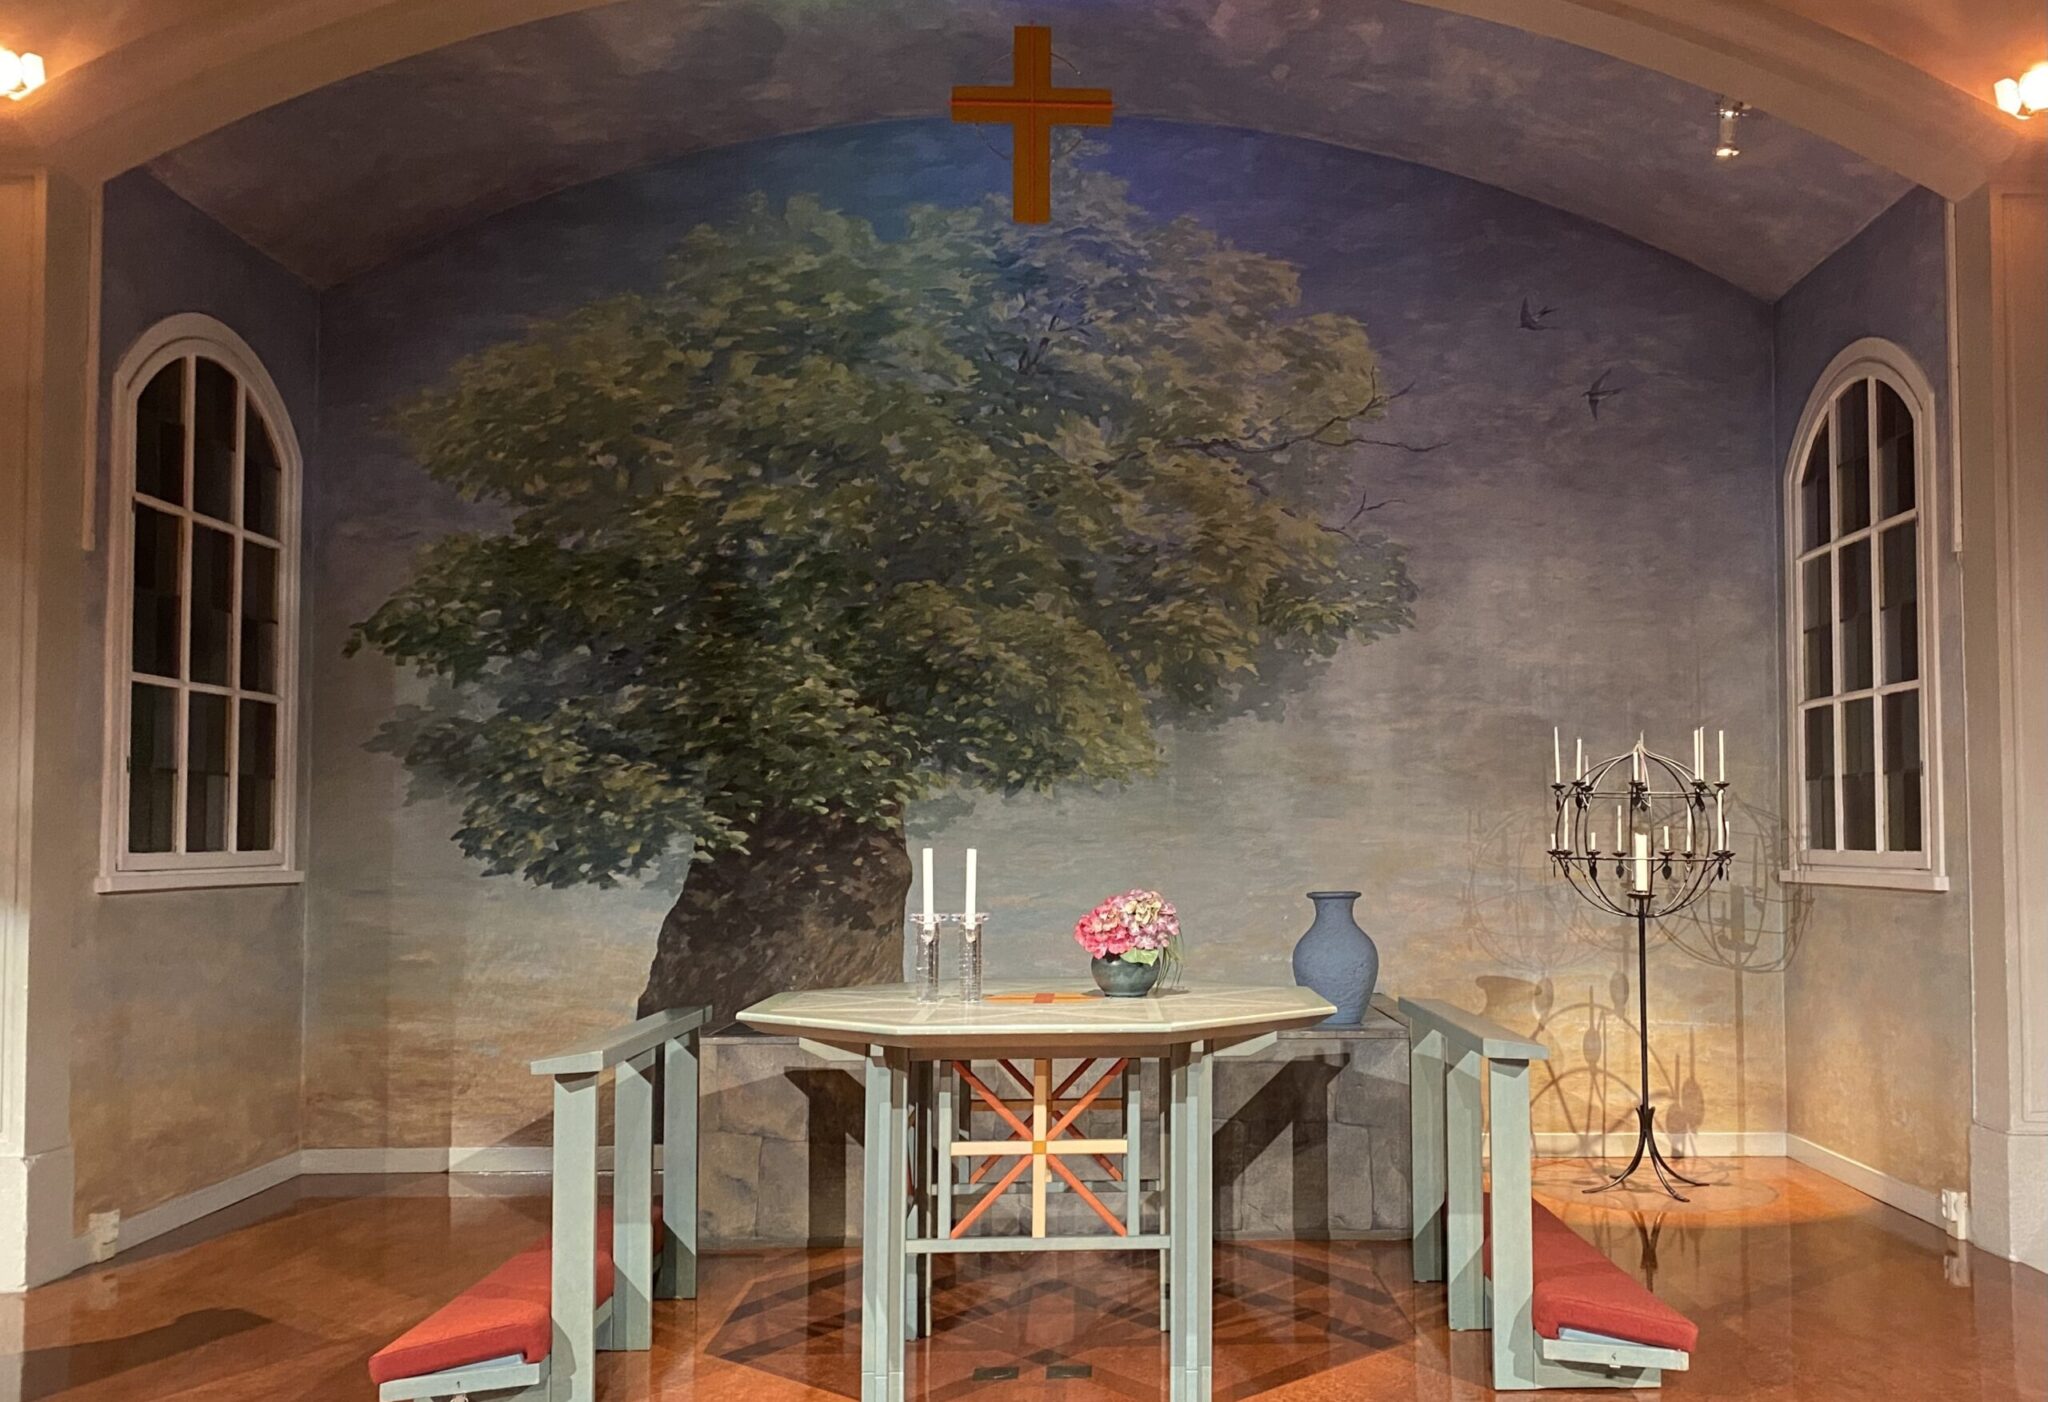 Altaret med ljus och blommor på. Till höger den stora ljusstaken och i bakgrunden altartavlan med ett stort träd med grön krona. I förgrunden i taket hänger ett rött kors.